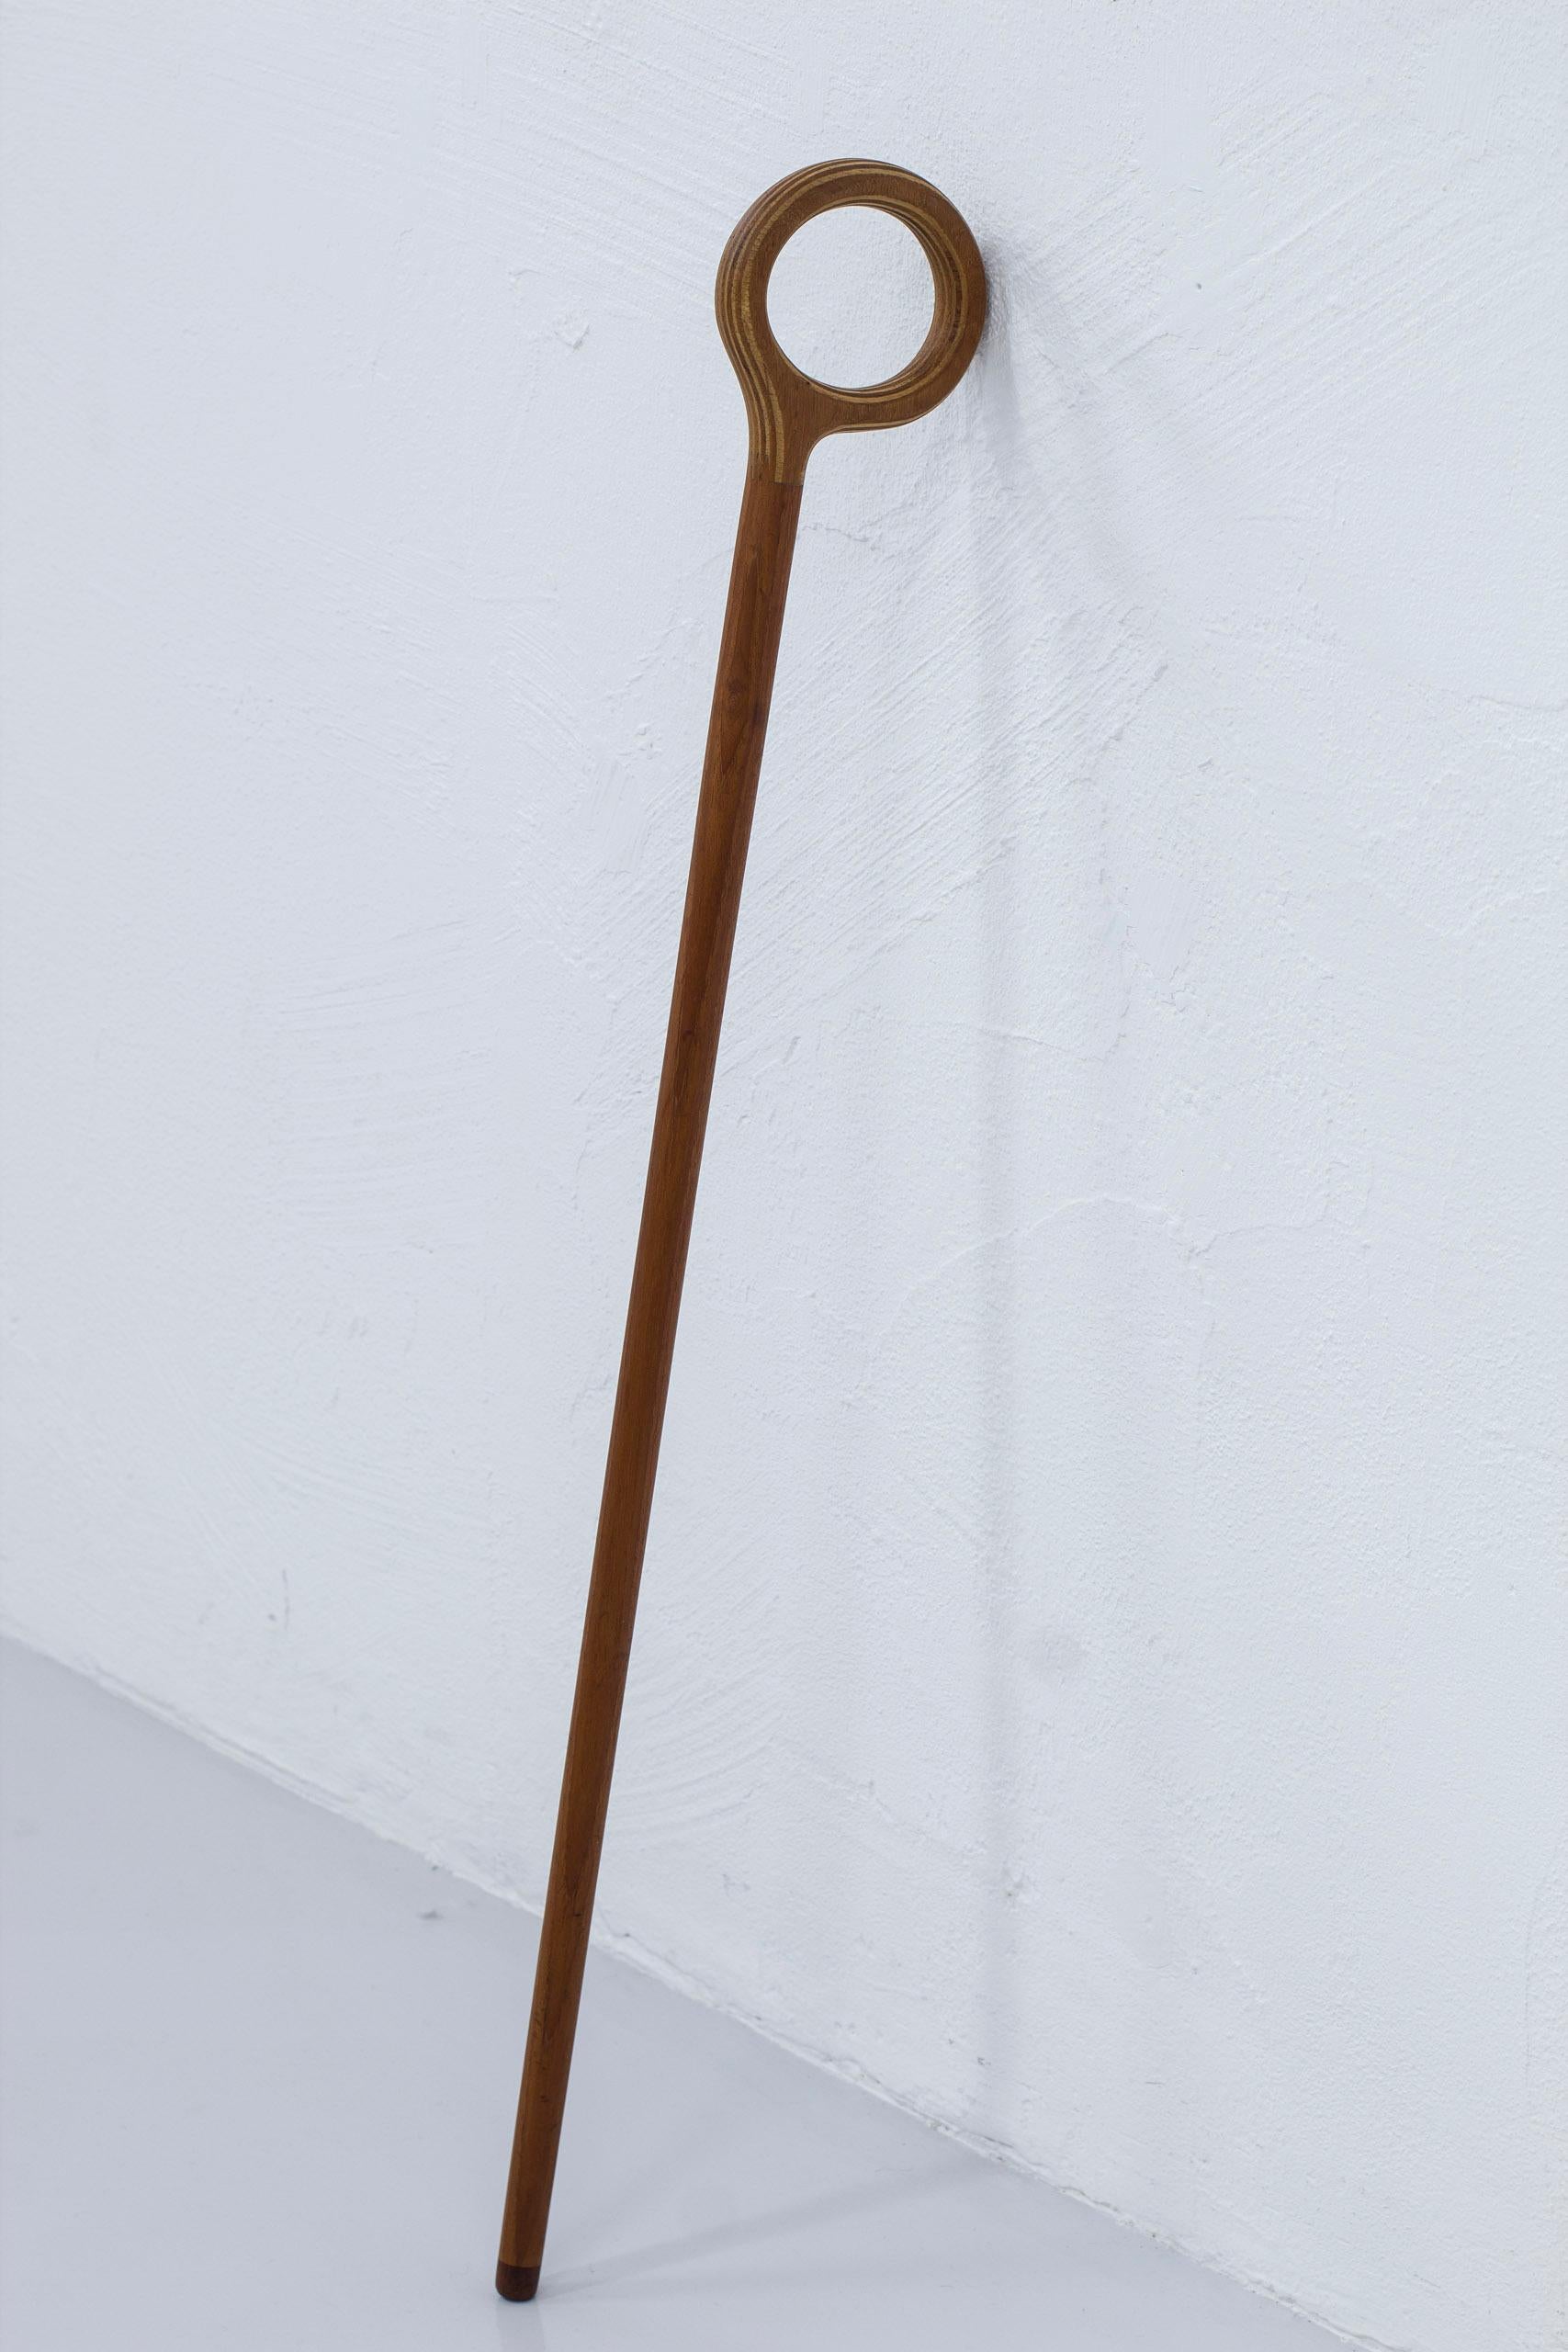 Spazierstock entworfen von Nanna & Jørgen Ditzel. Produziert von Kold's Savvaerk in Dänemark in den 1950er Jahren. Dieses Beispiel aus massivem Teakholz in den Stamm mit einer Spitze aus Walnuss und laminiert Ahorn und Teak Griff. Guter